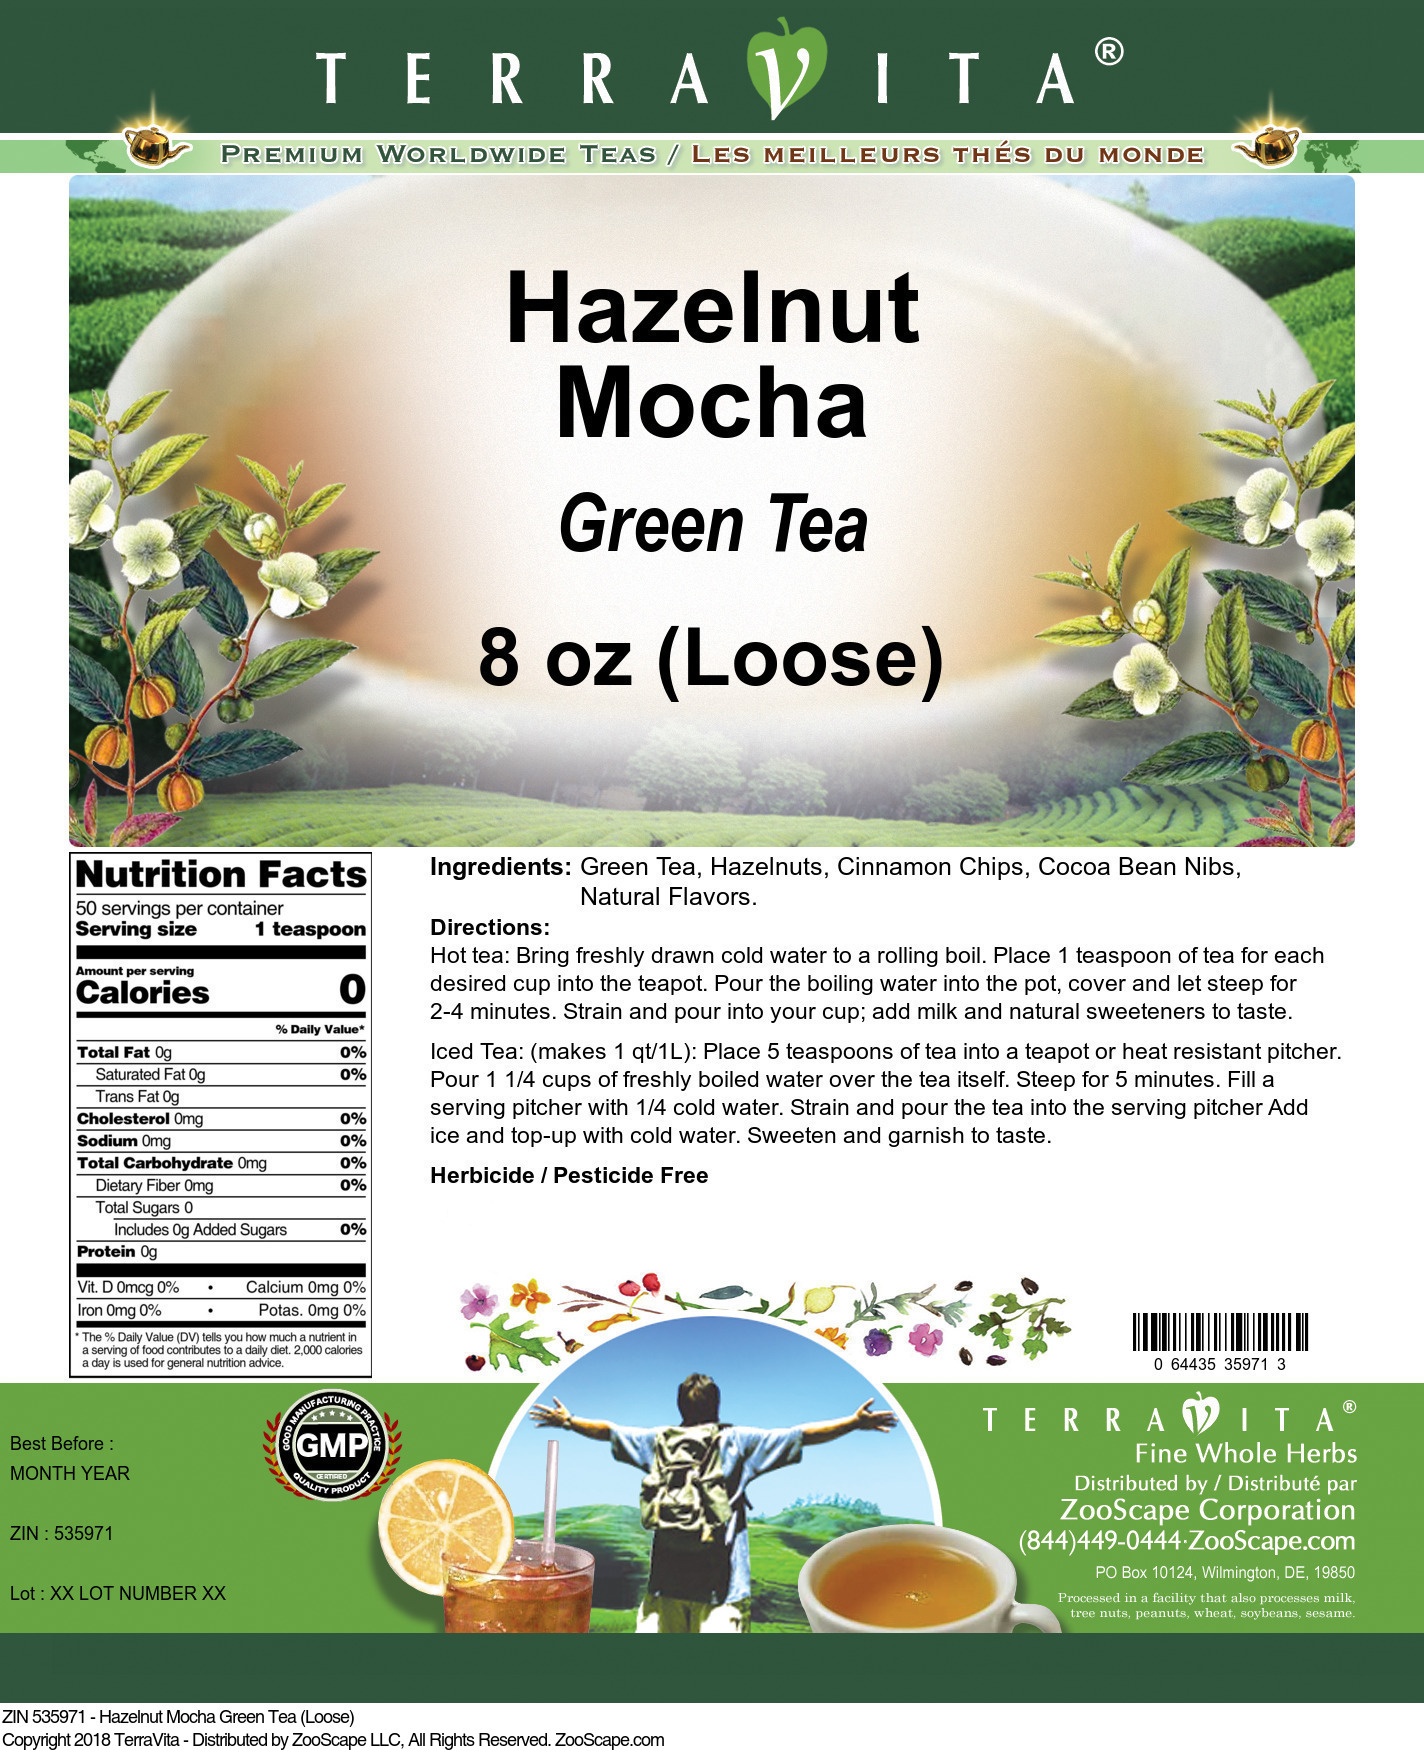 Hazelnut Mocha Green Tea (Loose) - Label